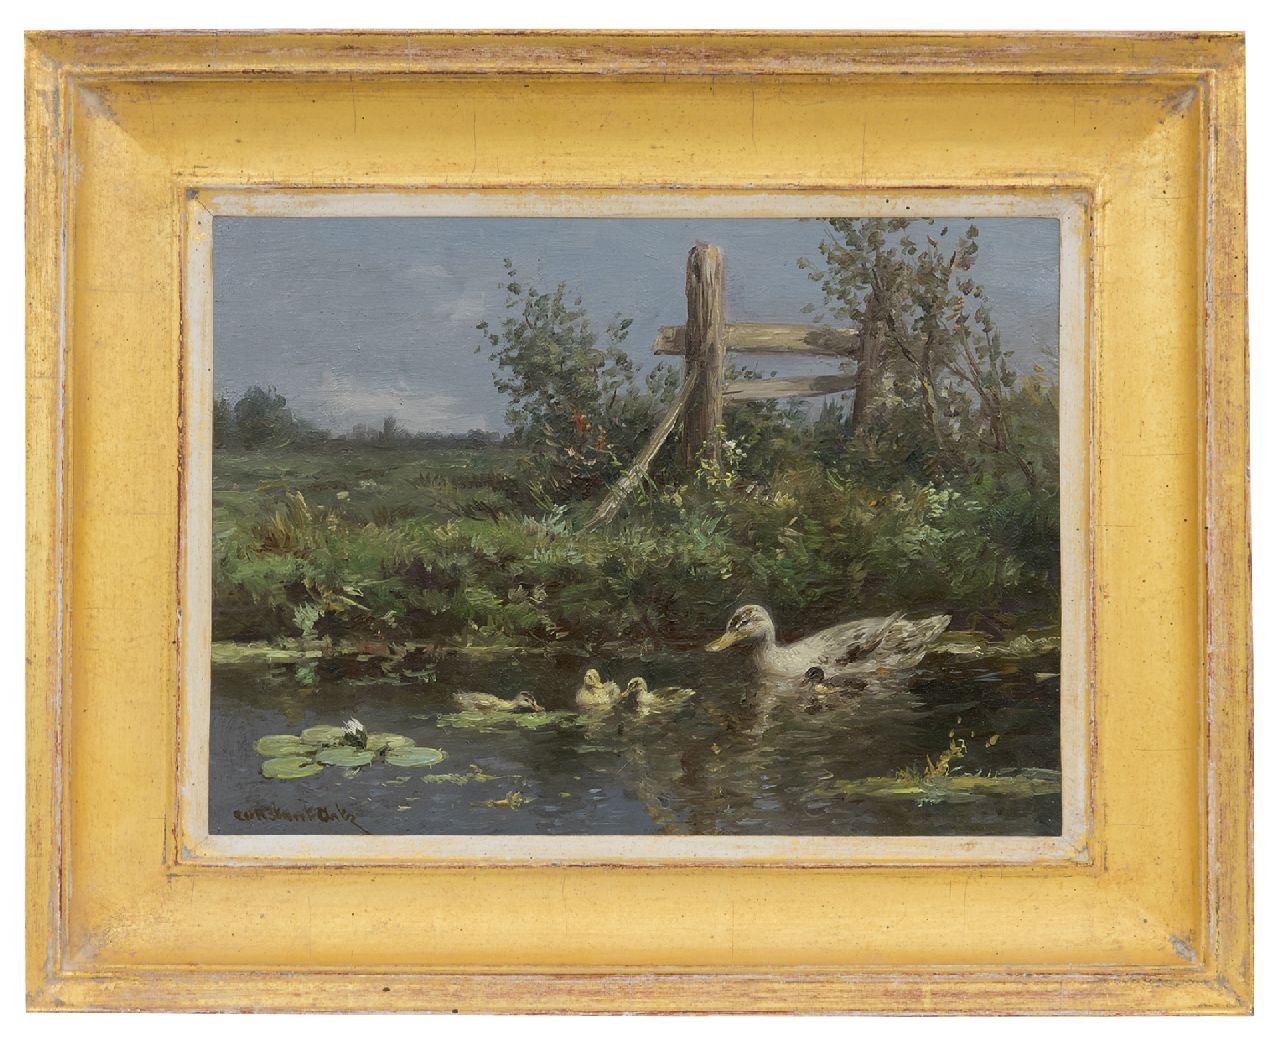 Artz C.D.L.  | 'Constant' David Ludovic Artz, Eendenfamilie langs de waterkant, olieverf op paneel 18,1 x 24,2 cm, gesigneerd linksonder